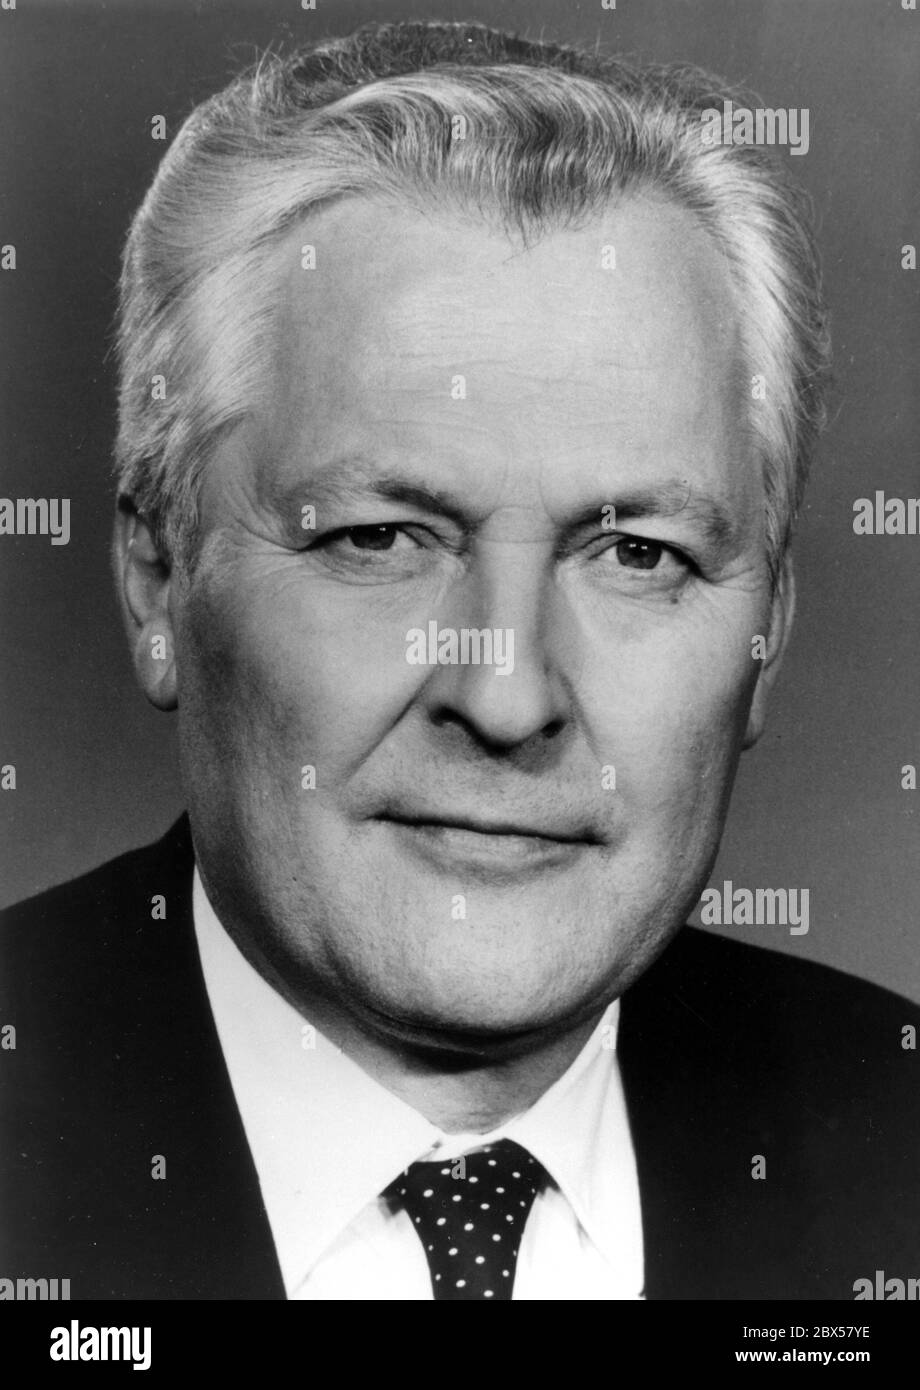 Werner Felfe (04.01.1928 - 07-09.1988) entre 1971 et 1981 a été secrétaire de district SED de Halle, entre 1981 et 1988 a été membre du Conseil d'Etat de la RDA, entre 1976 et 1988 membre du Politburo de la SED et depuis 1981 secrétaire de l'Agriculture du Comité central. Brièvement avant sa mort soudaine en 1988, il a été considéré comme un successeur possible du chef de SED Erich Honecker. Banque D'Images